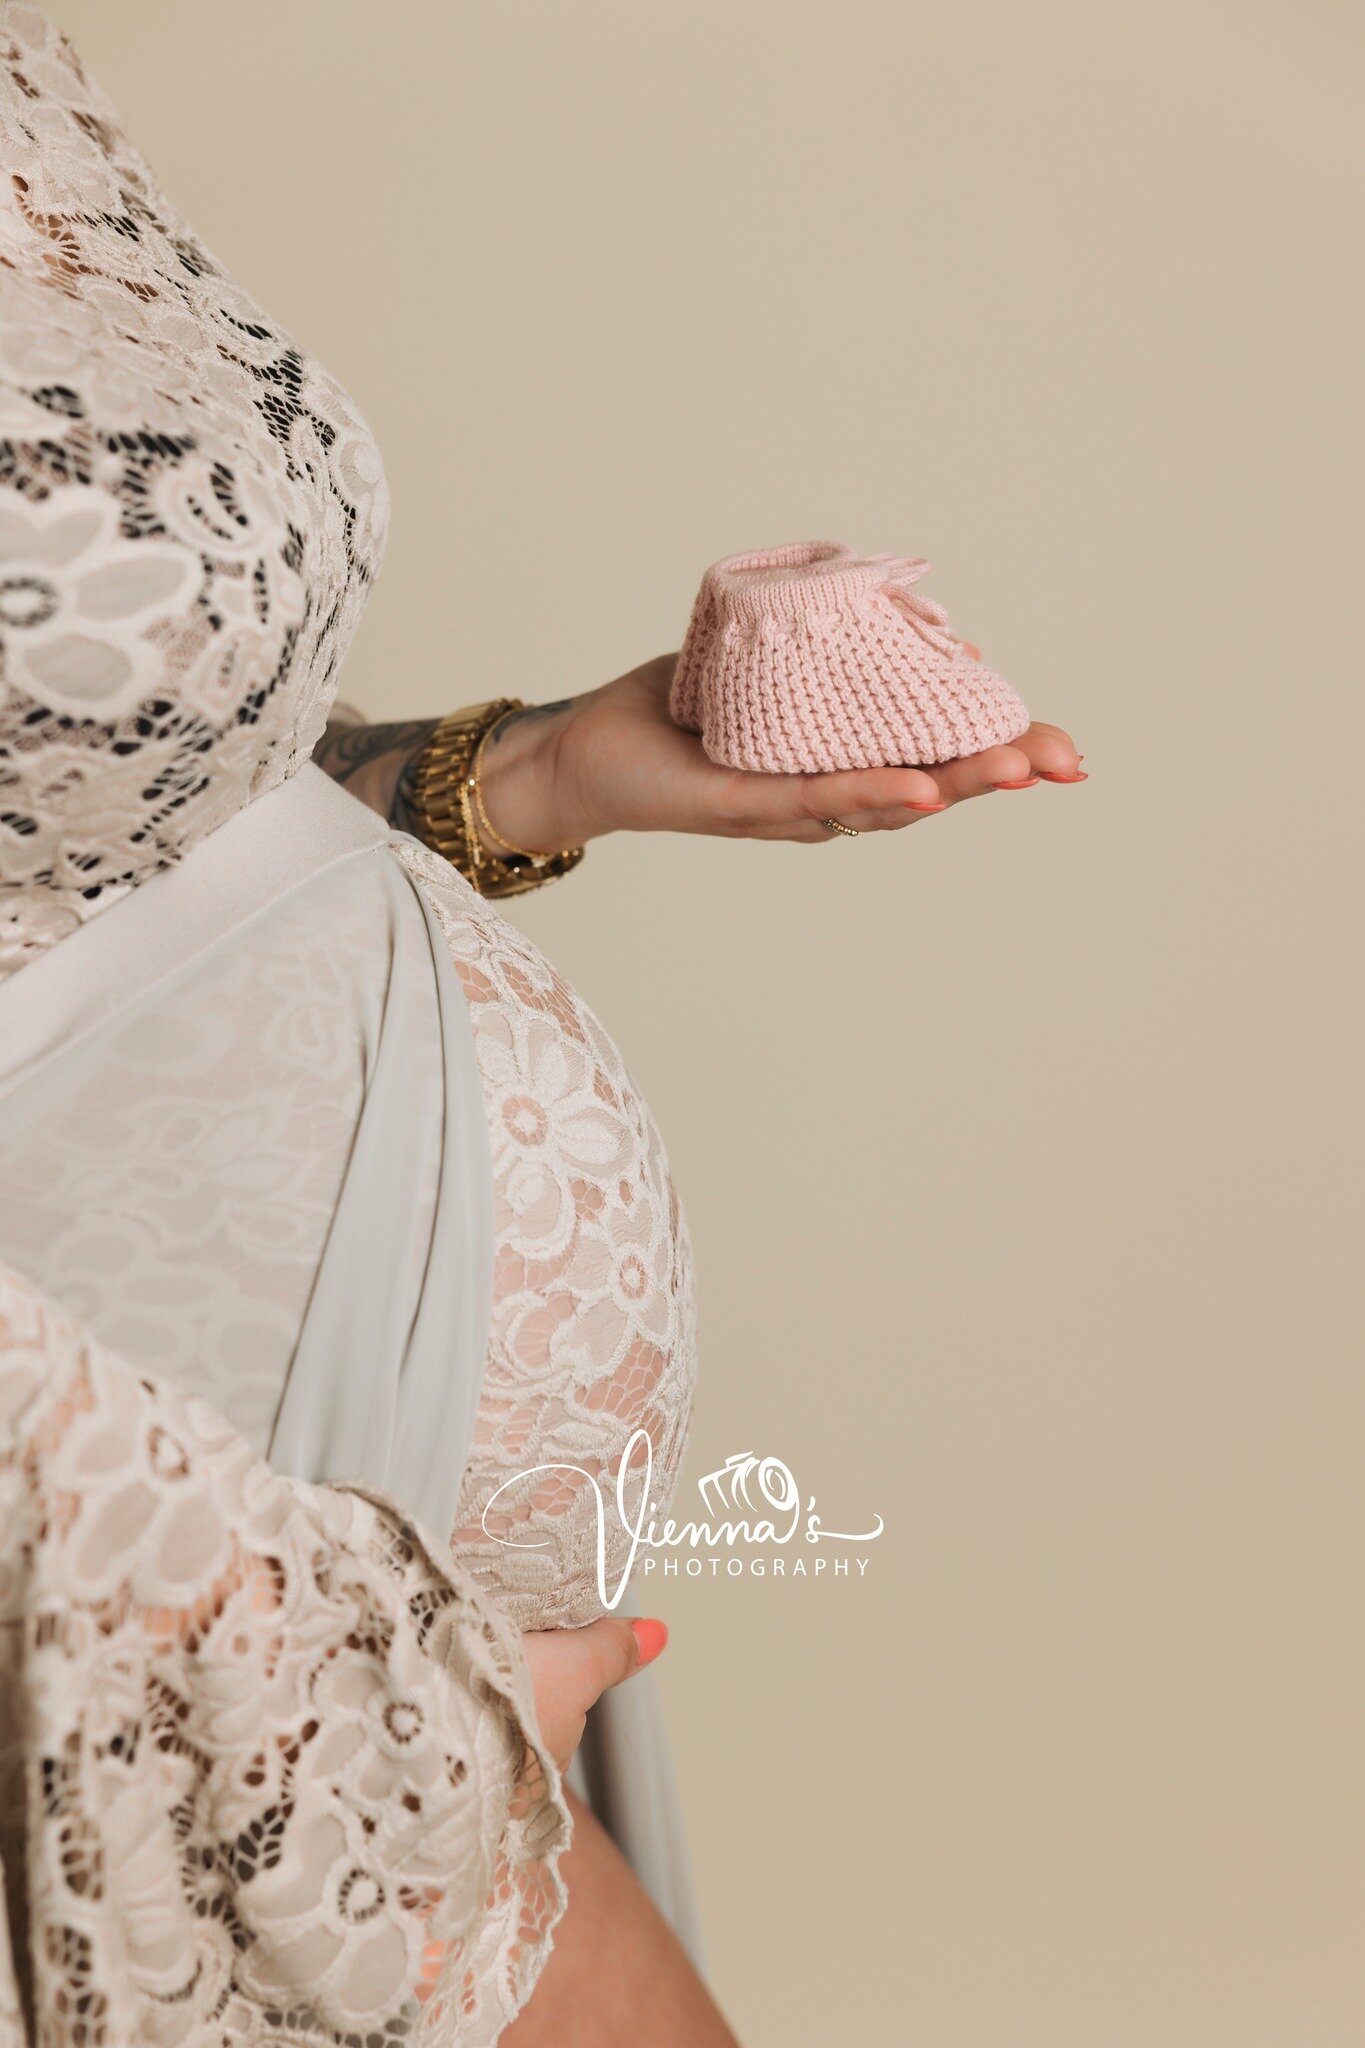 Afgelopen zondag een prachtige zwangerschap mogen fotograferen. Deze prachtige jurk ook voor het eerste kunnen fotograferen 😍 Hij vanaf nu ook beschikbaar in mijn client closet! 

Wil jij ook een prachtige zwangerschap shoot doen? Stuur me dan gerus